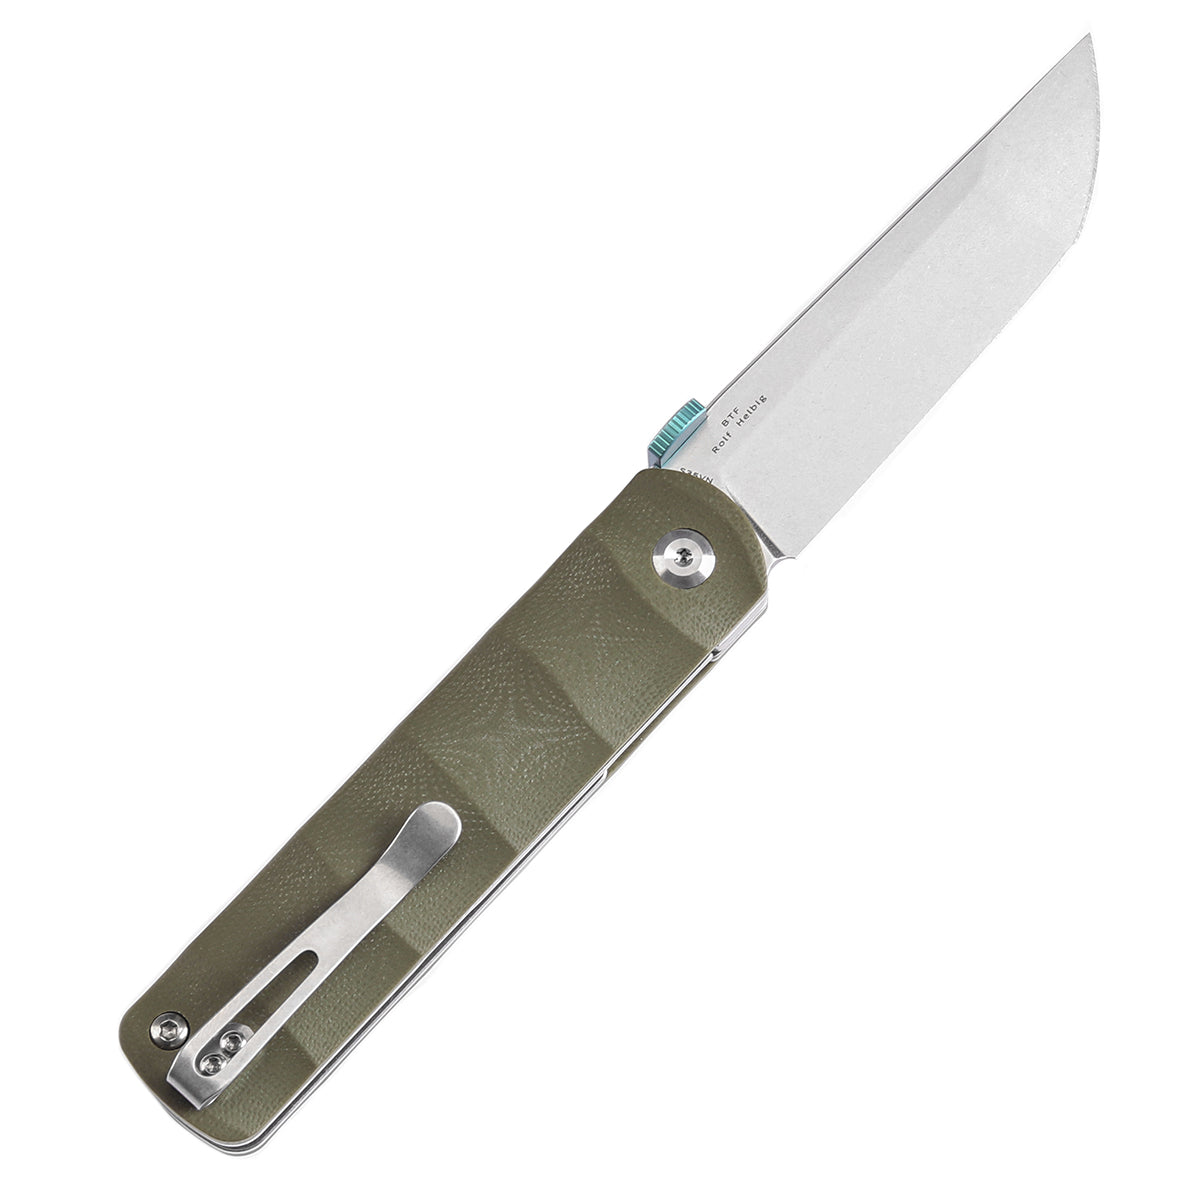 Kansept BTF K1064A1 CPM-S35VN Blade Green G10 Handle Edc Flipper Knife